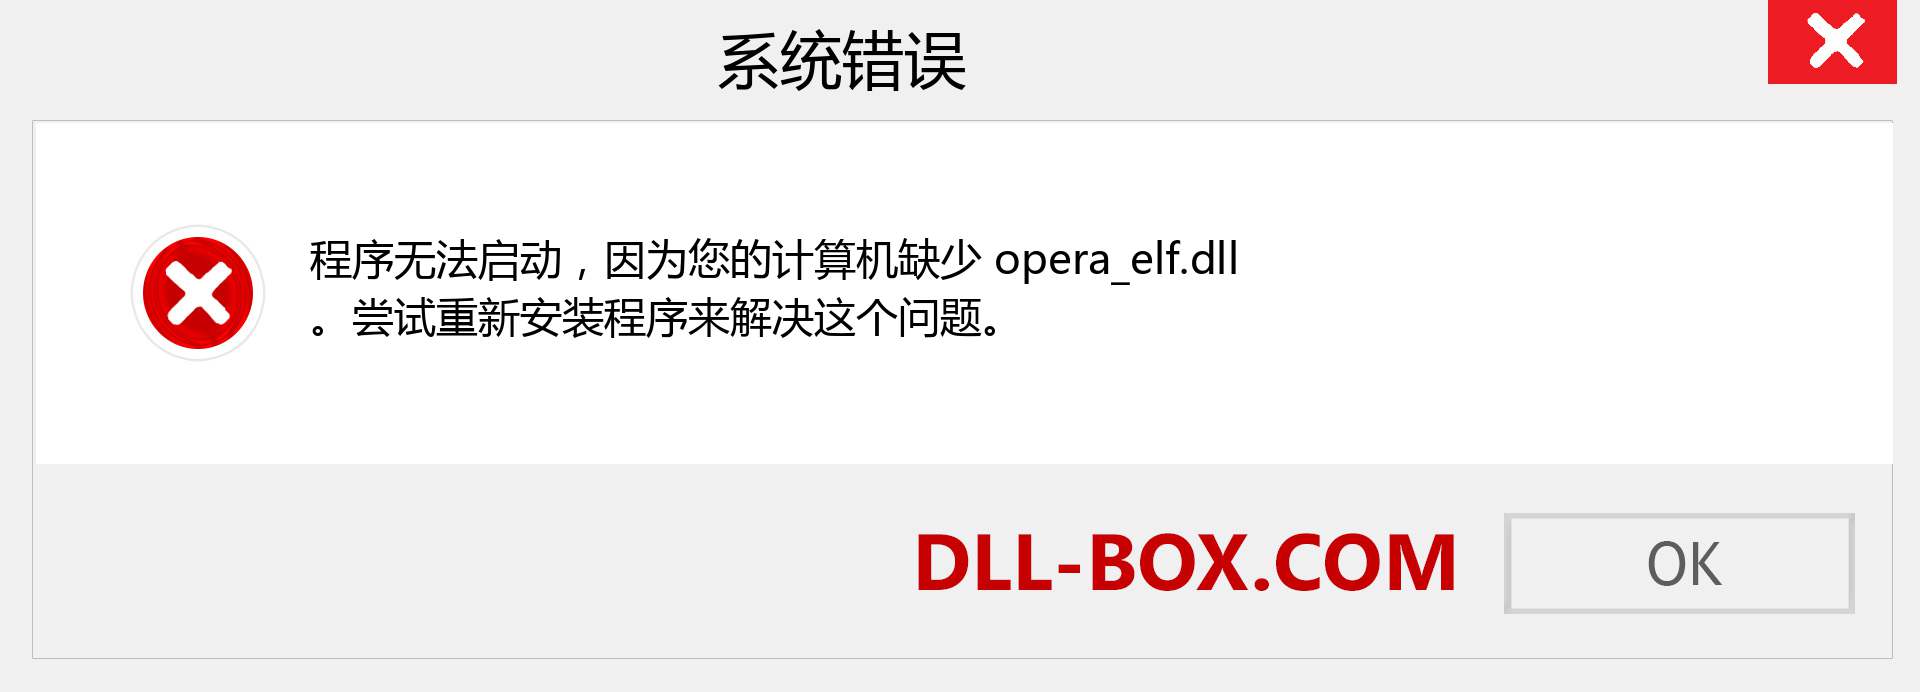 opera_elf.dll 文件丢失？。 适用于 Windows 7、8、10 的下载 - 修复 Windows、照片、图像上的 opera_elf dll 丢失错误